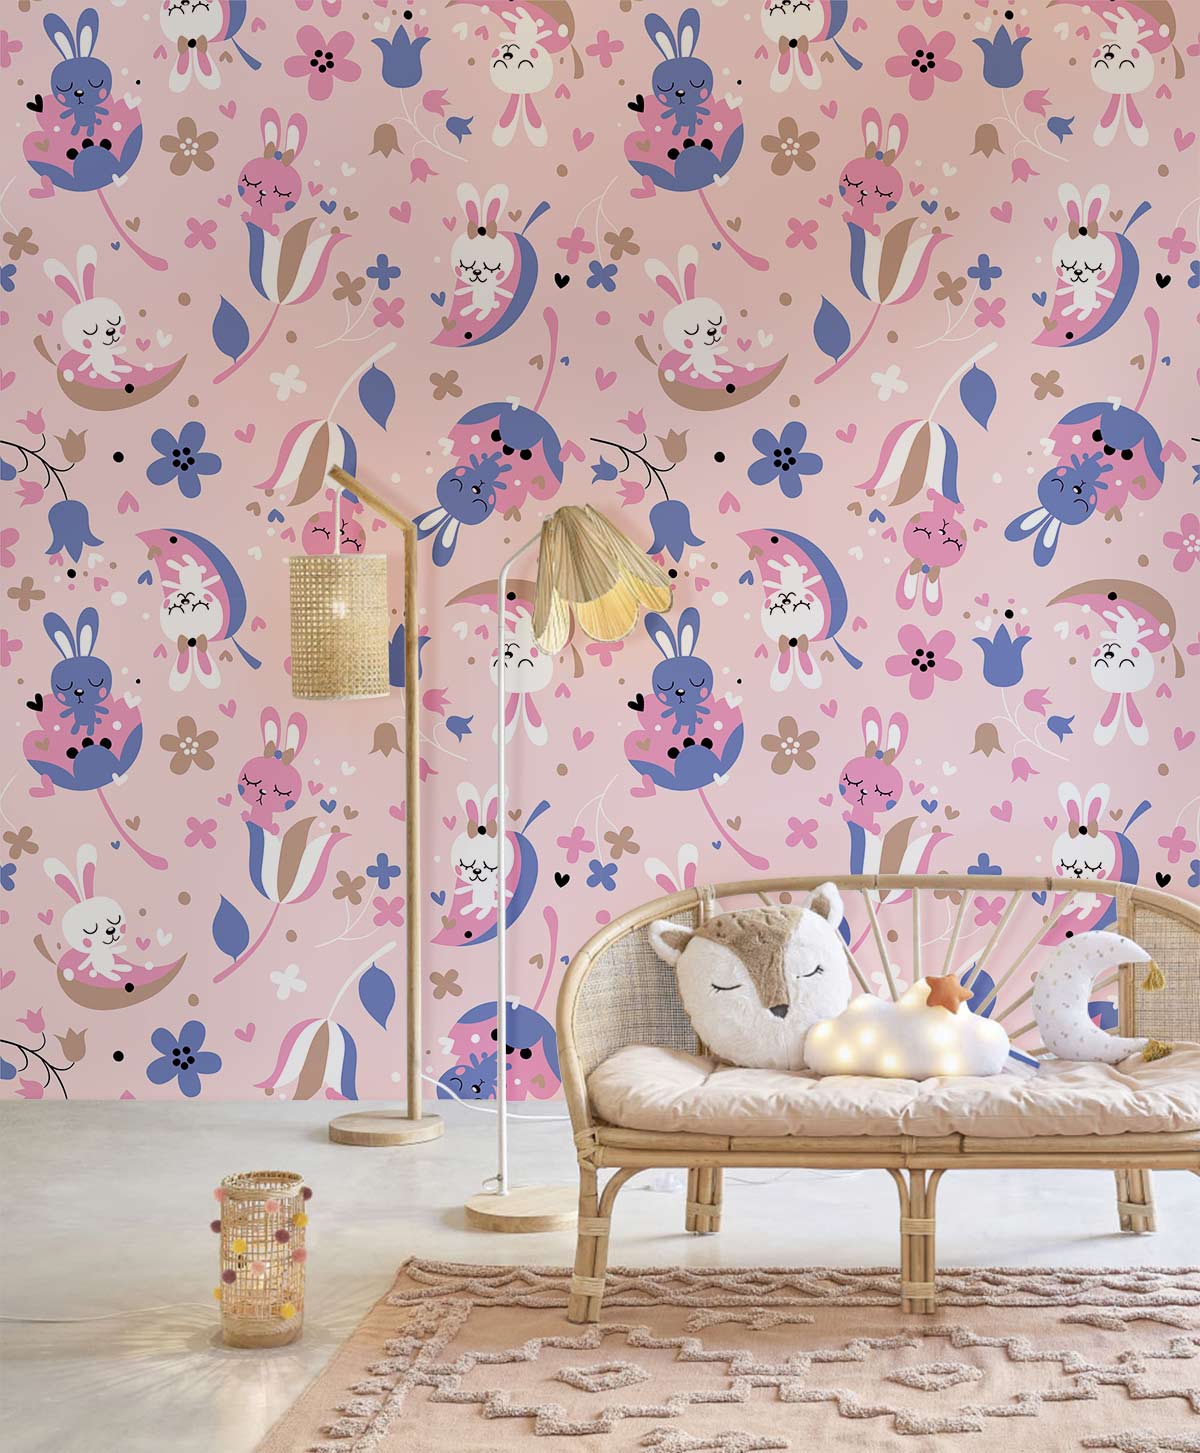 Sleep Bunny Mural Wallpaper Home Interior Decor